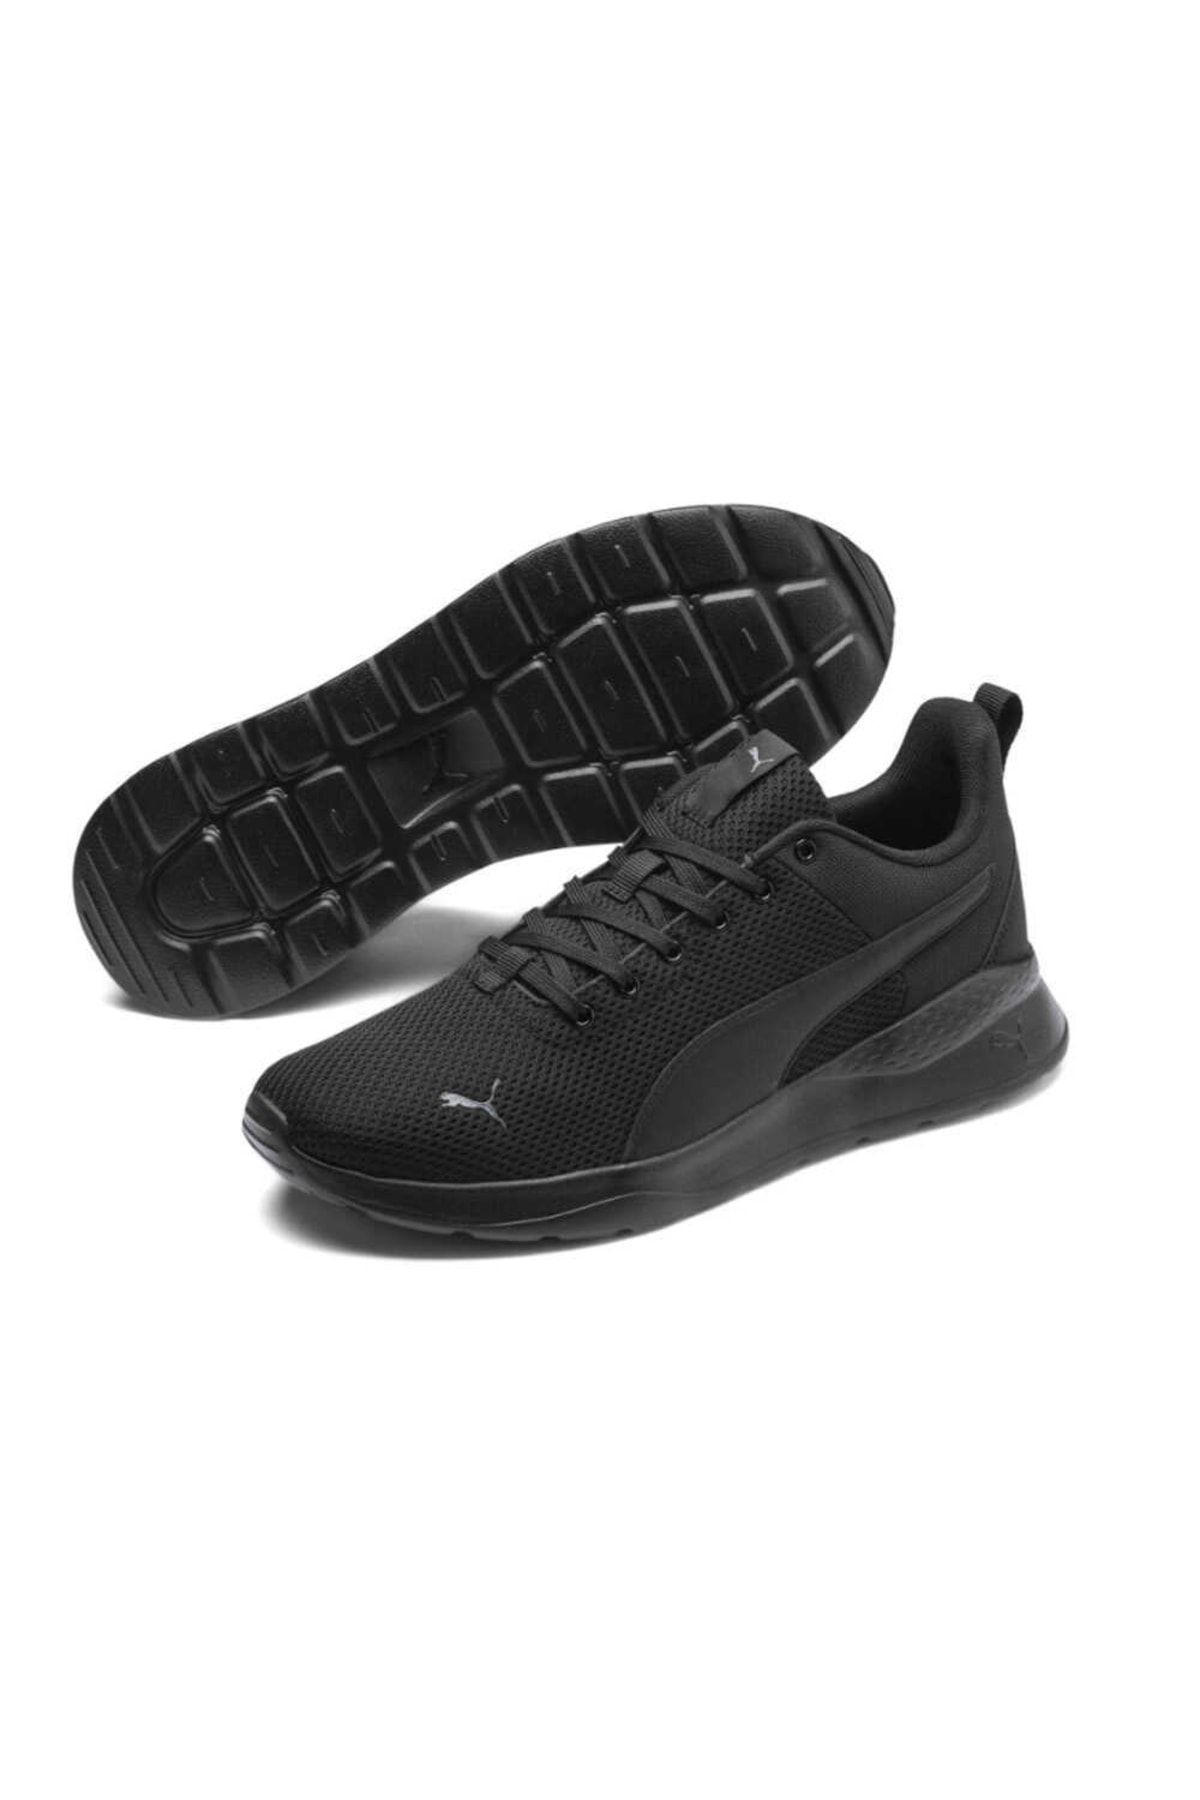 Puma Anzarun Lite Erkek Spor Ayakkabı-siyah